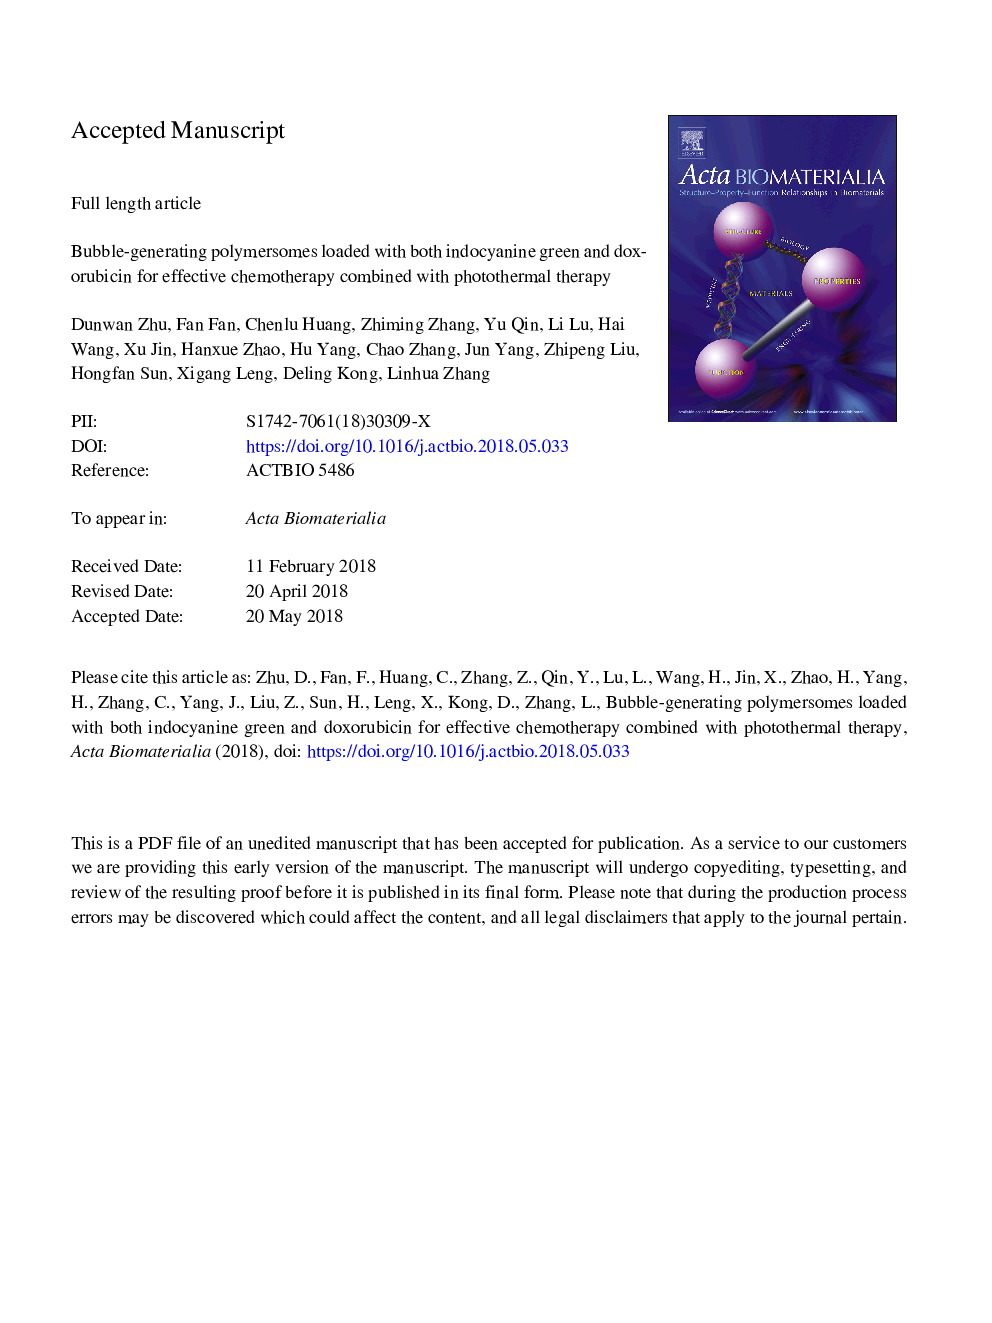 پلیمرزوم حبابی تولید شده با هر دو سبز اندوسیانین و دوکسوروبیسین برای شیمیدرمانی موثر همراه با درمان فوتوترمال 